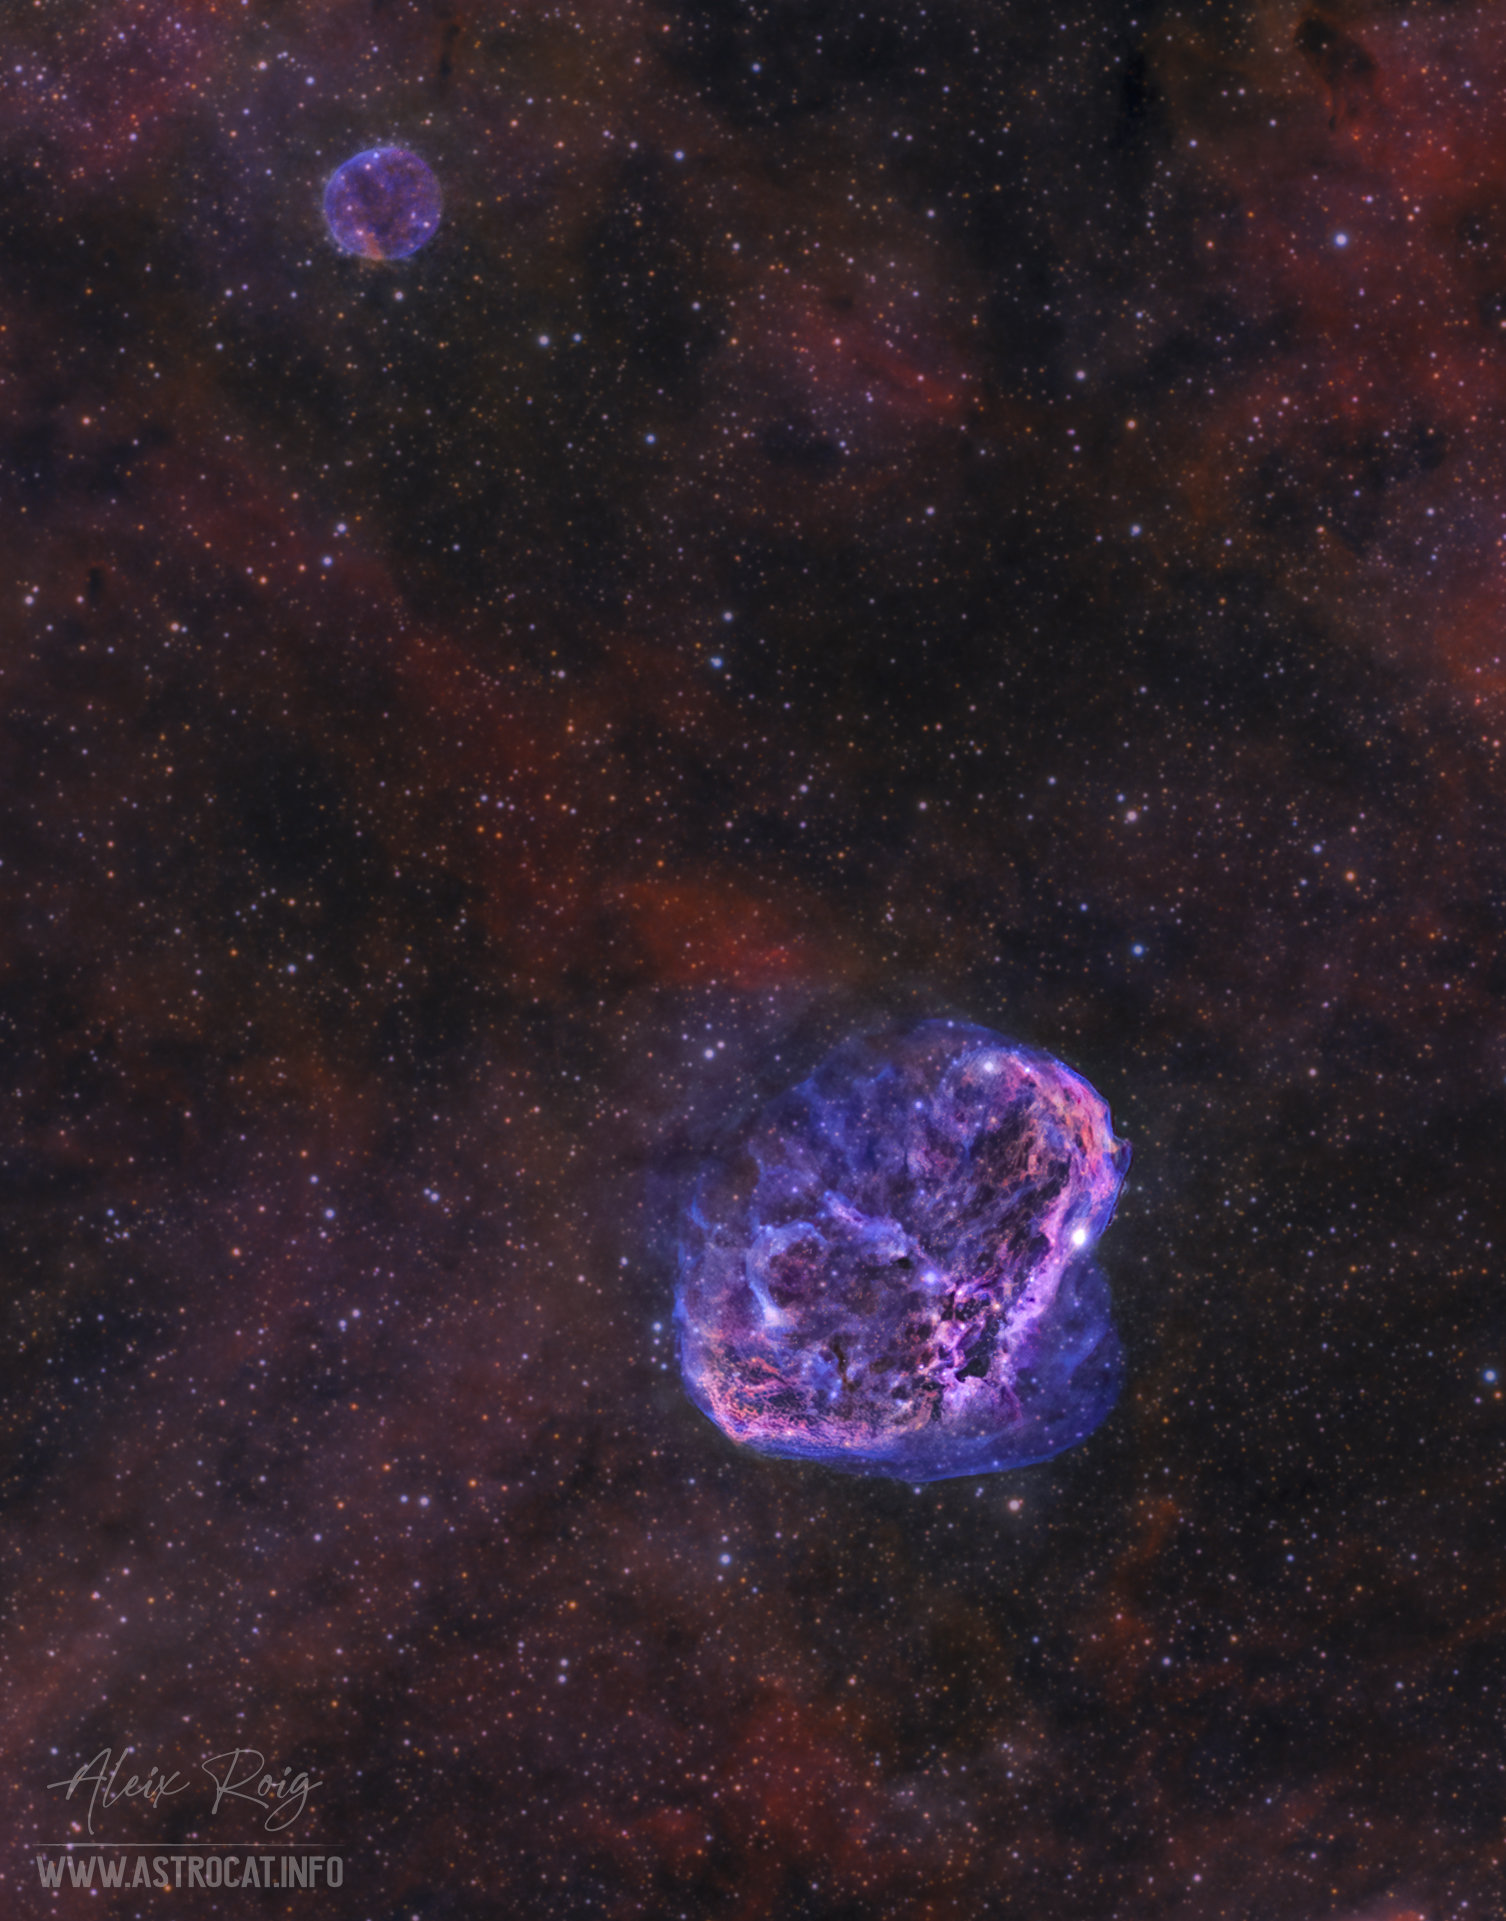 Nebulosa Creixent i Bombolla - Aleix Roig